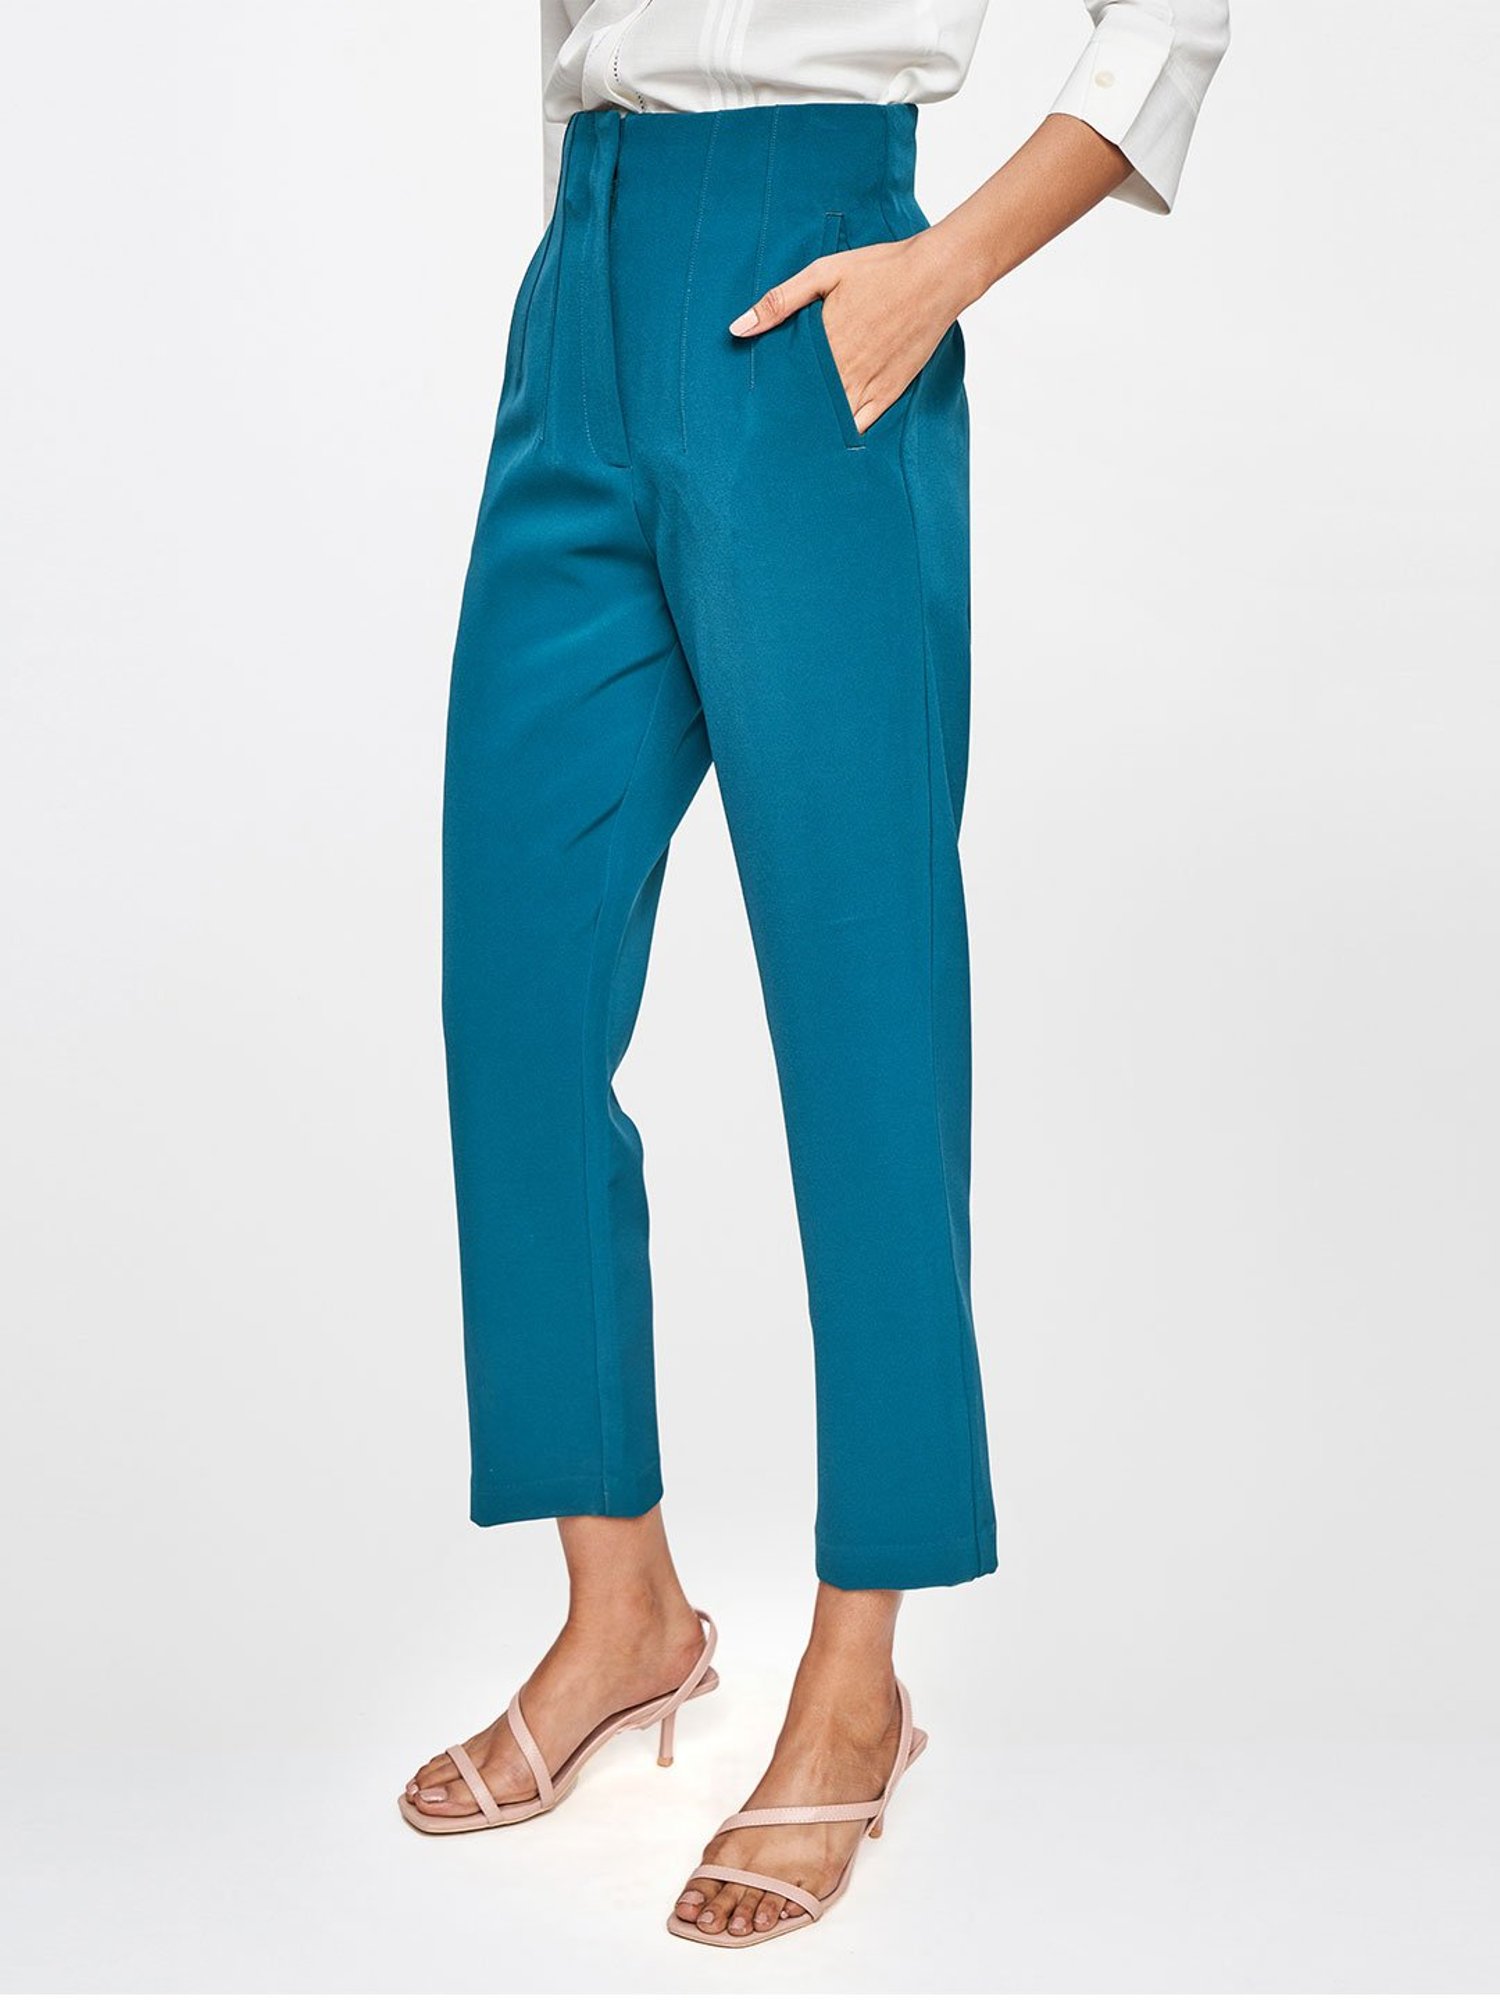 Classic Steel Blue Pants Suitsforme.com